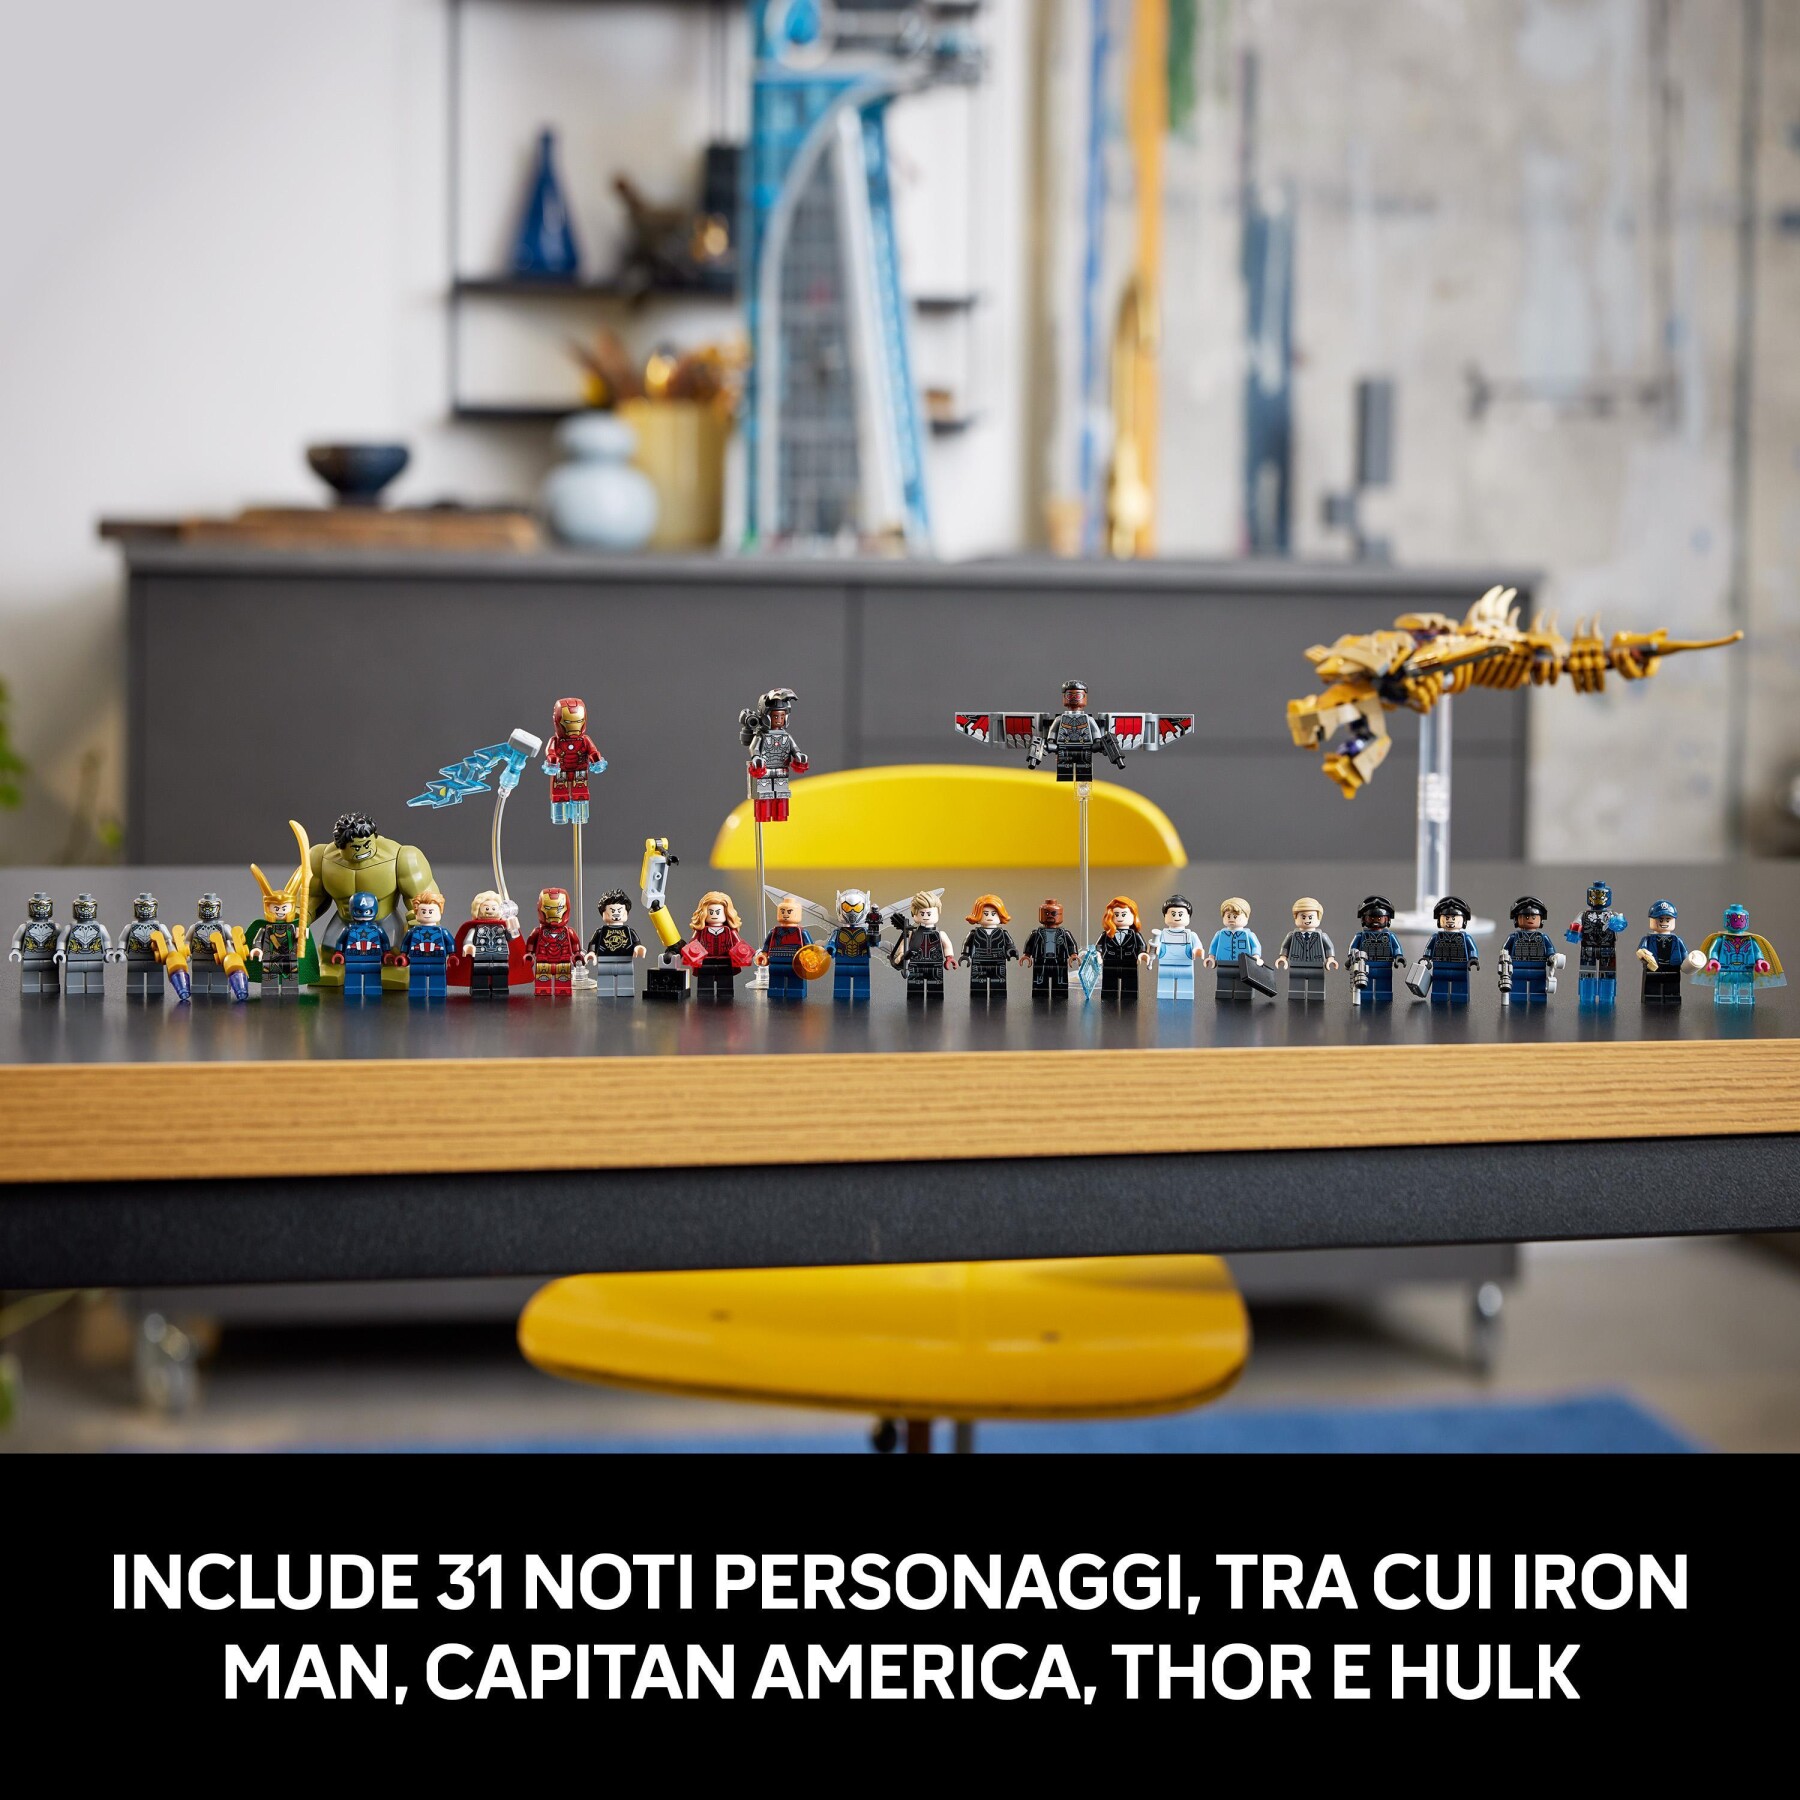 Lego marvel 76269 torre degli avengers, kit modellismo per adulti con modellino di aereo e 31 minifigure, regalo uomo o donna - LEGO SUPER HEROES, Avengers